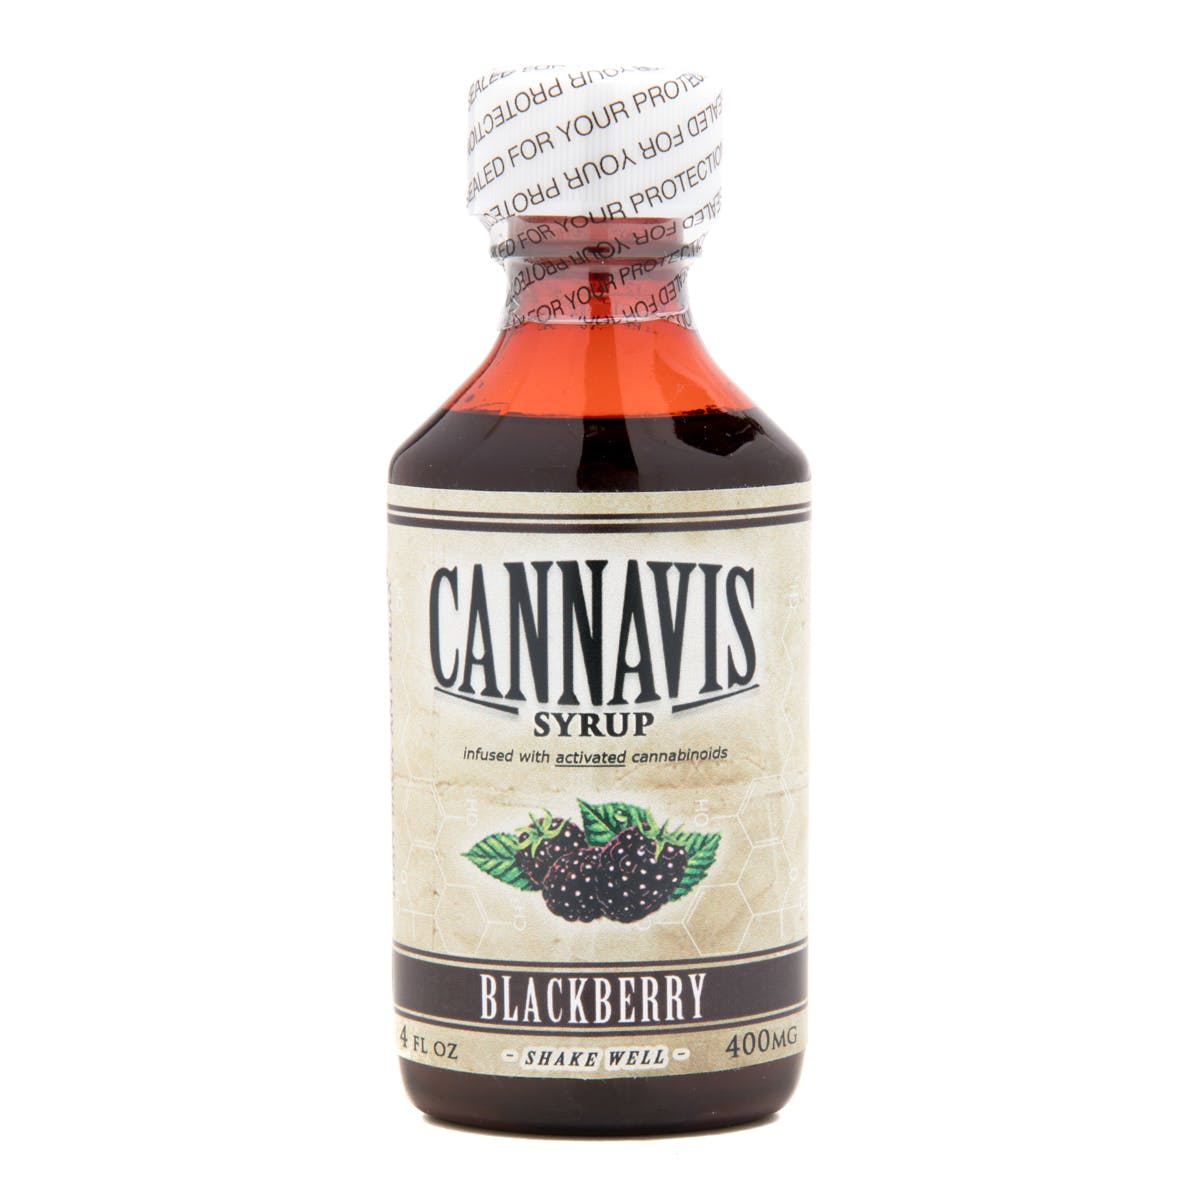 edible-cannavis-syrup-2c-blackberry-400mg